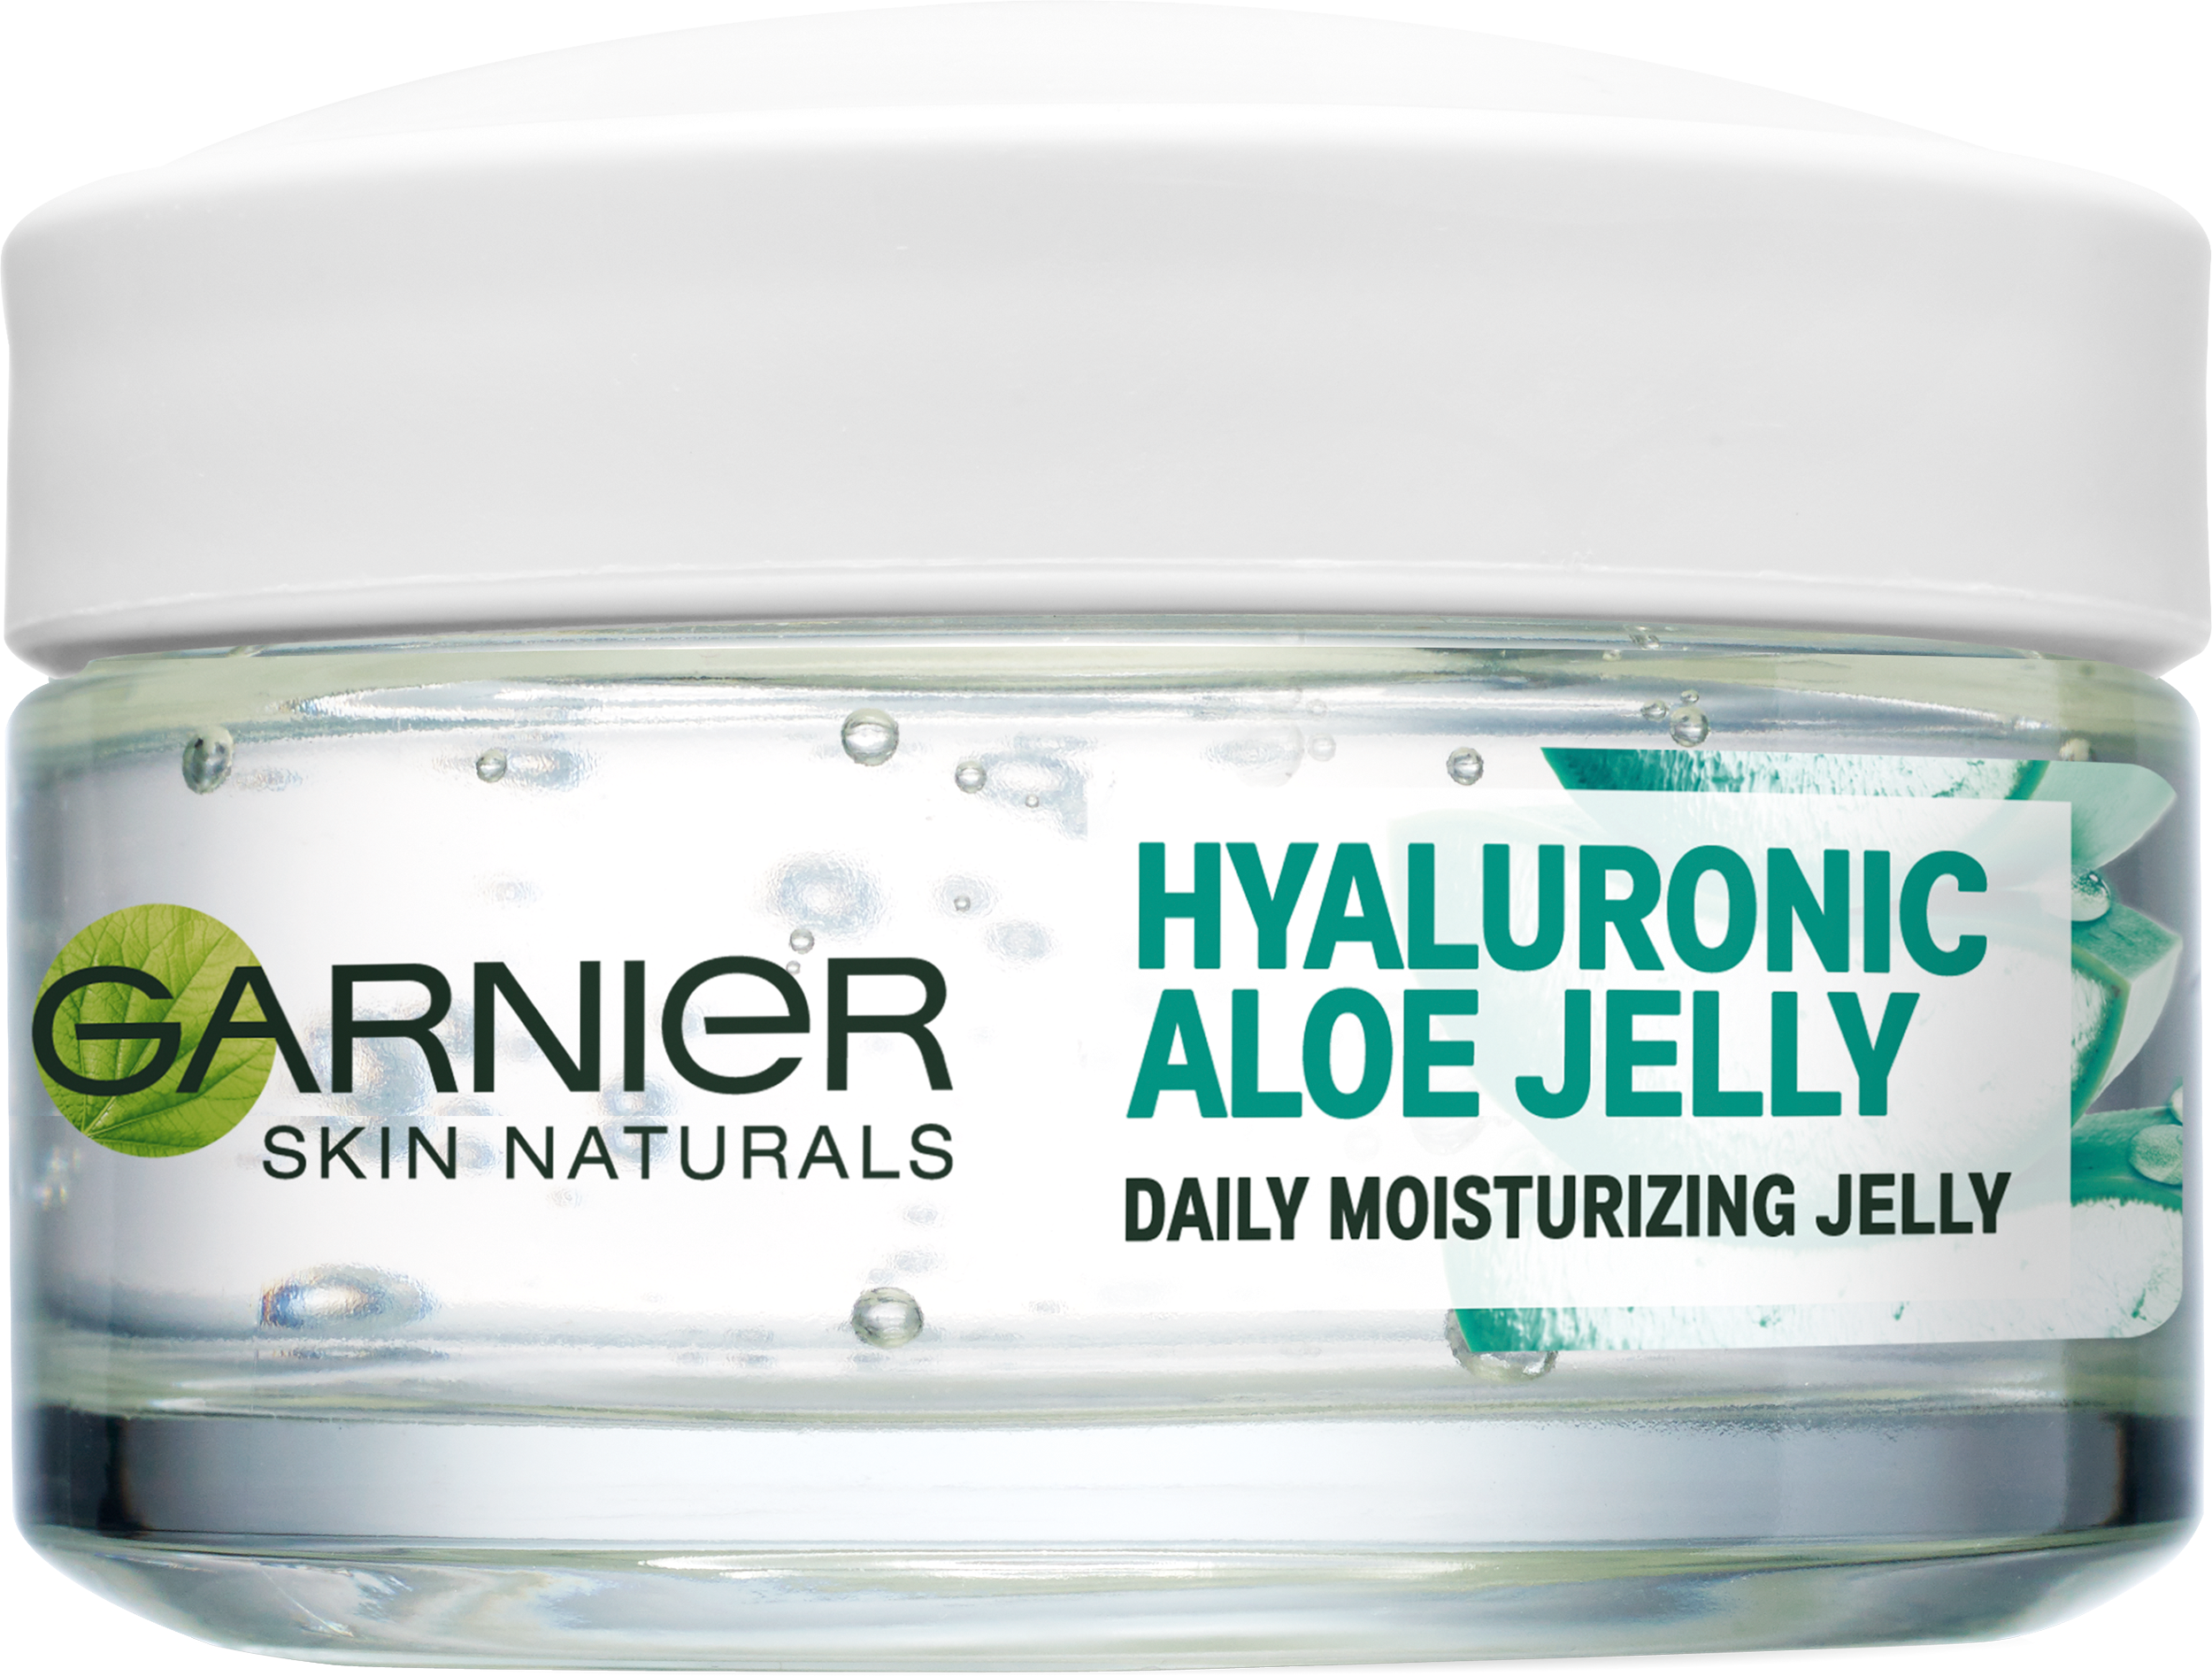 Garnier Hyaluronic Aloe Jelly 